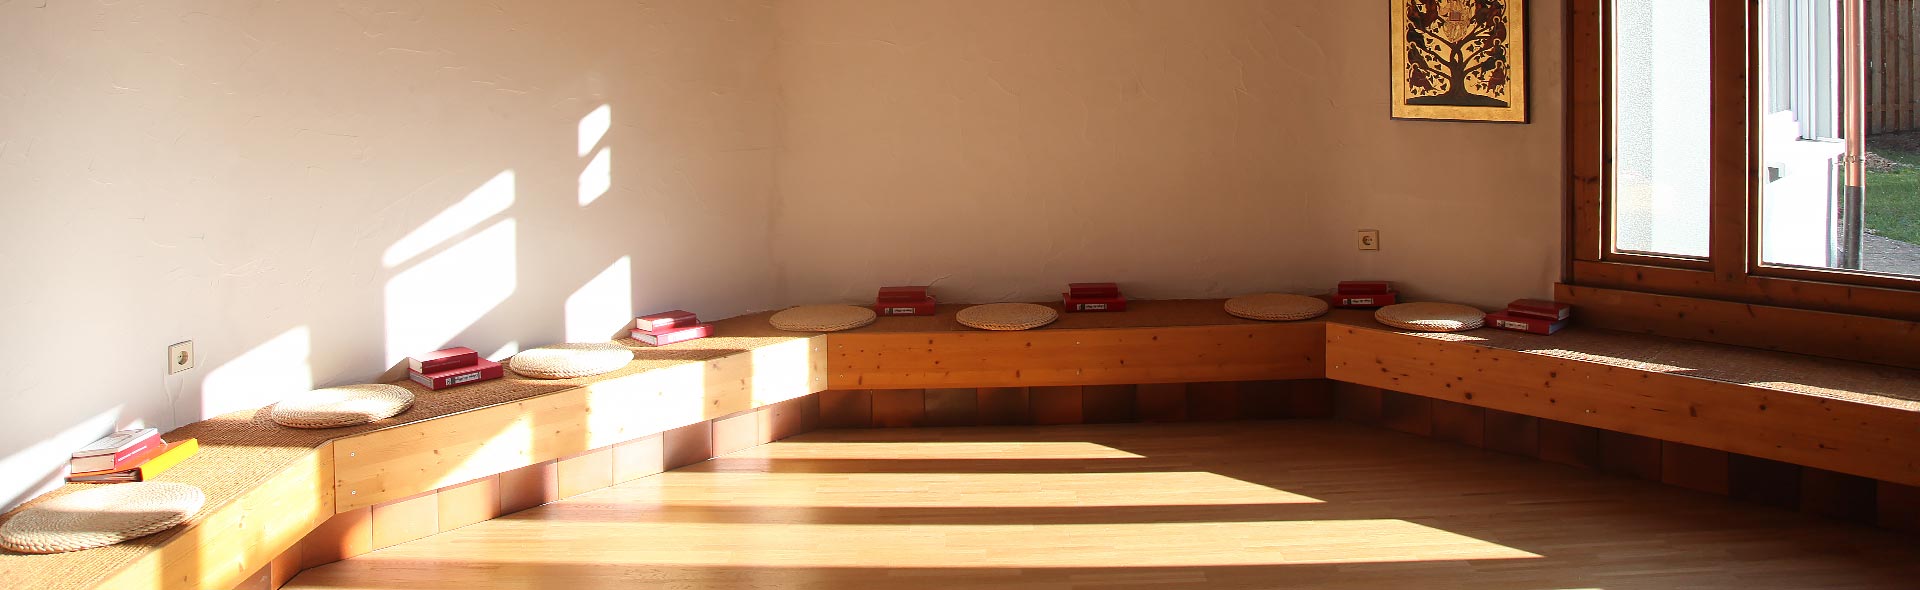 OJC Begegnen – Heller Kapelleraum, mit niederen Fenstern und Sitzbänken aus Holz.